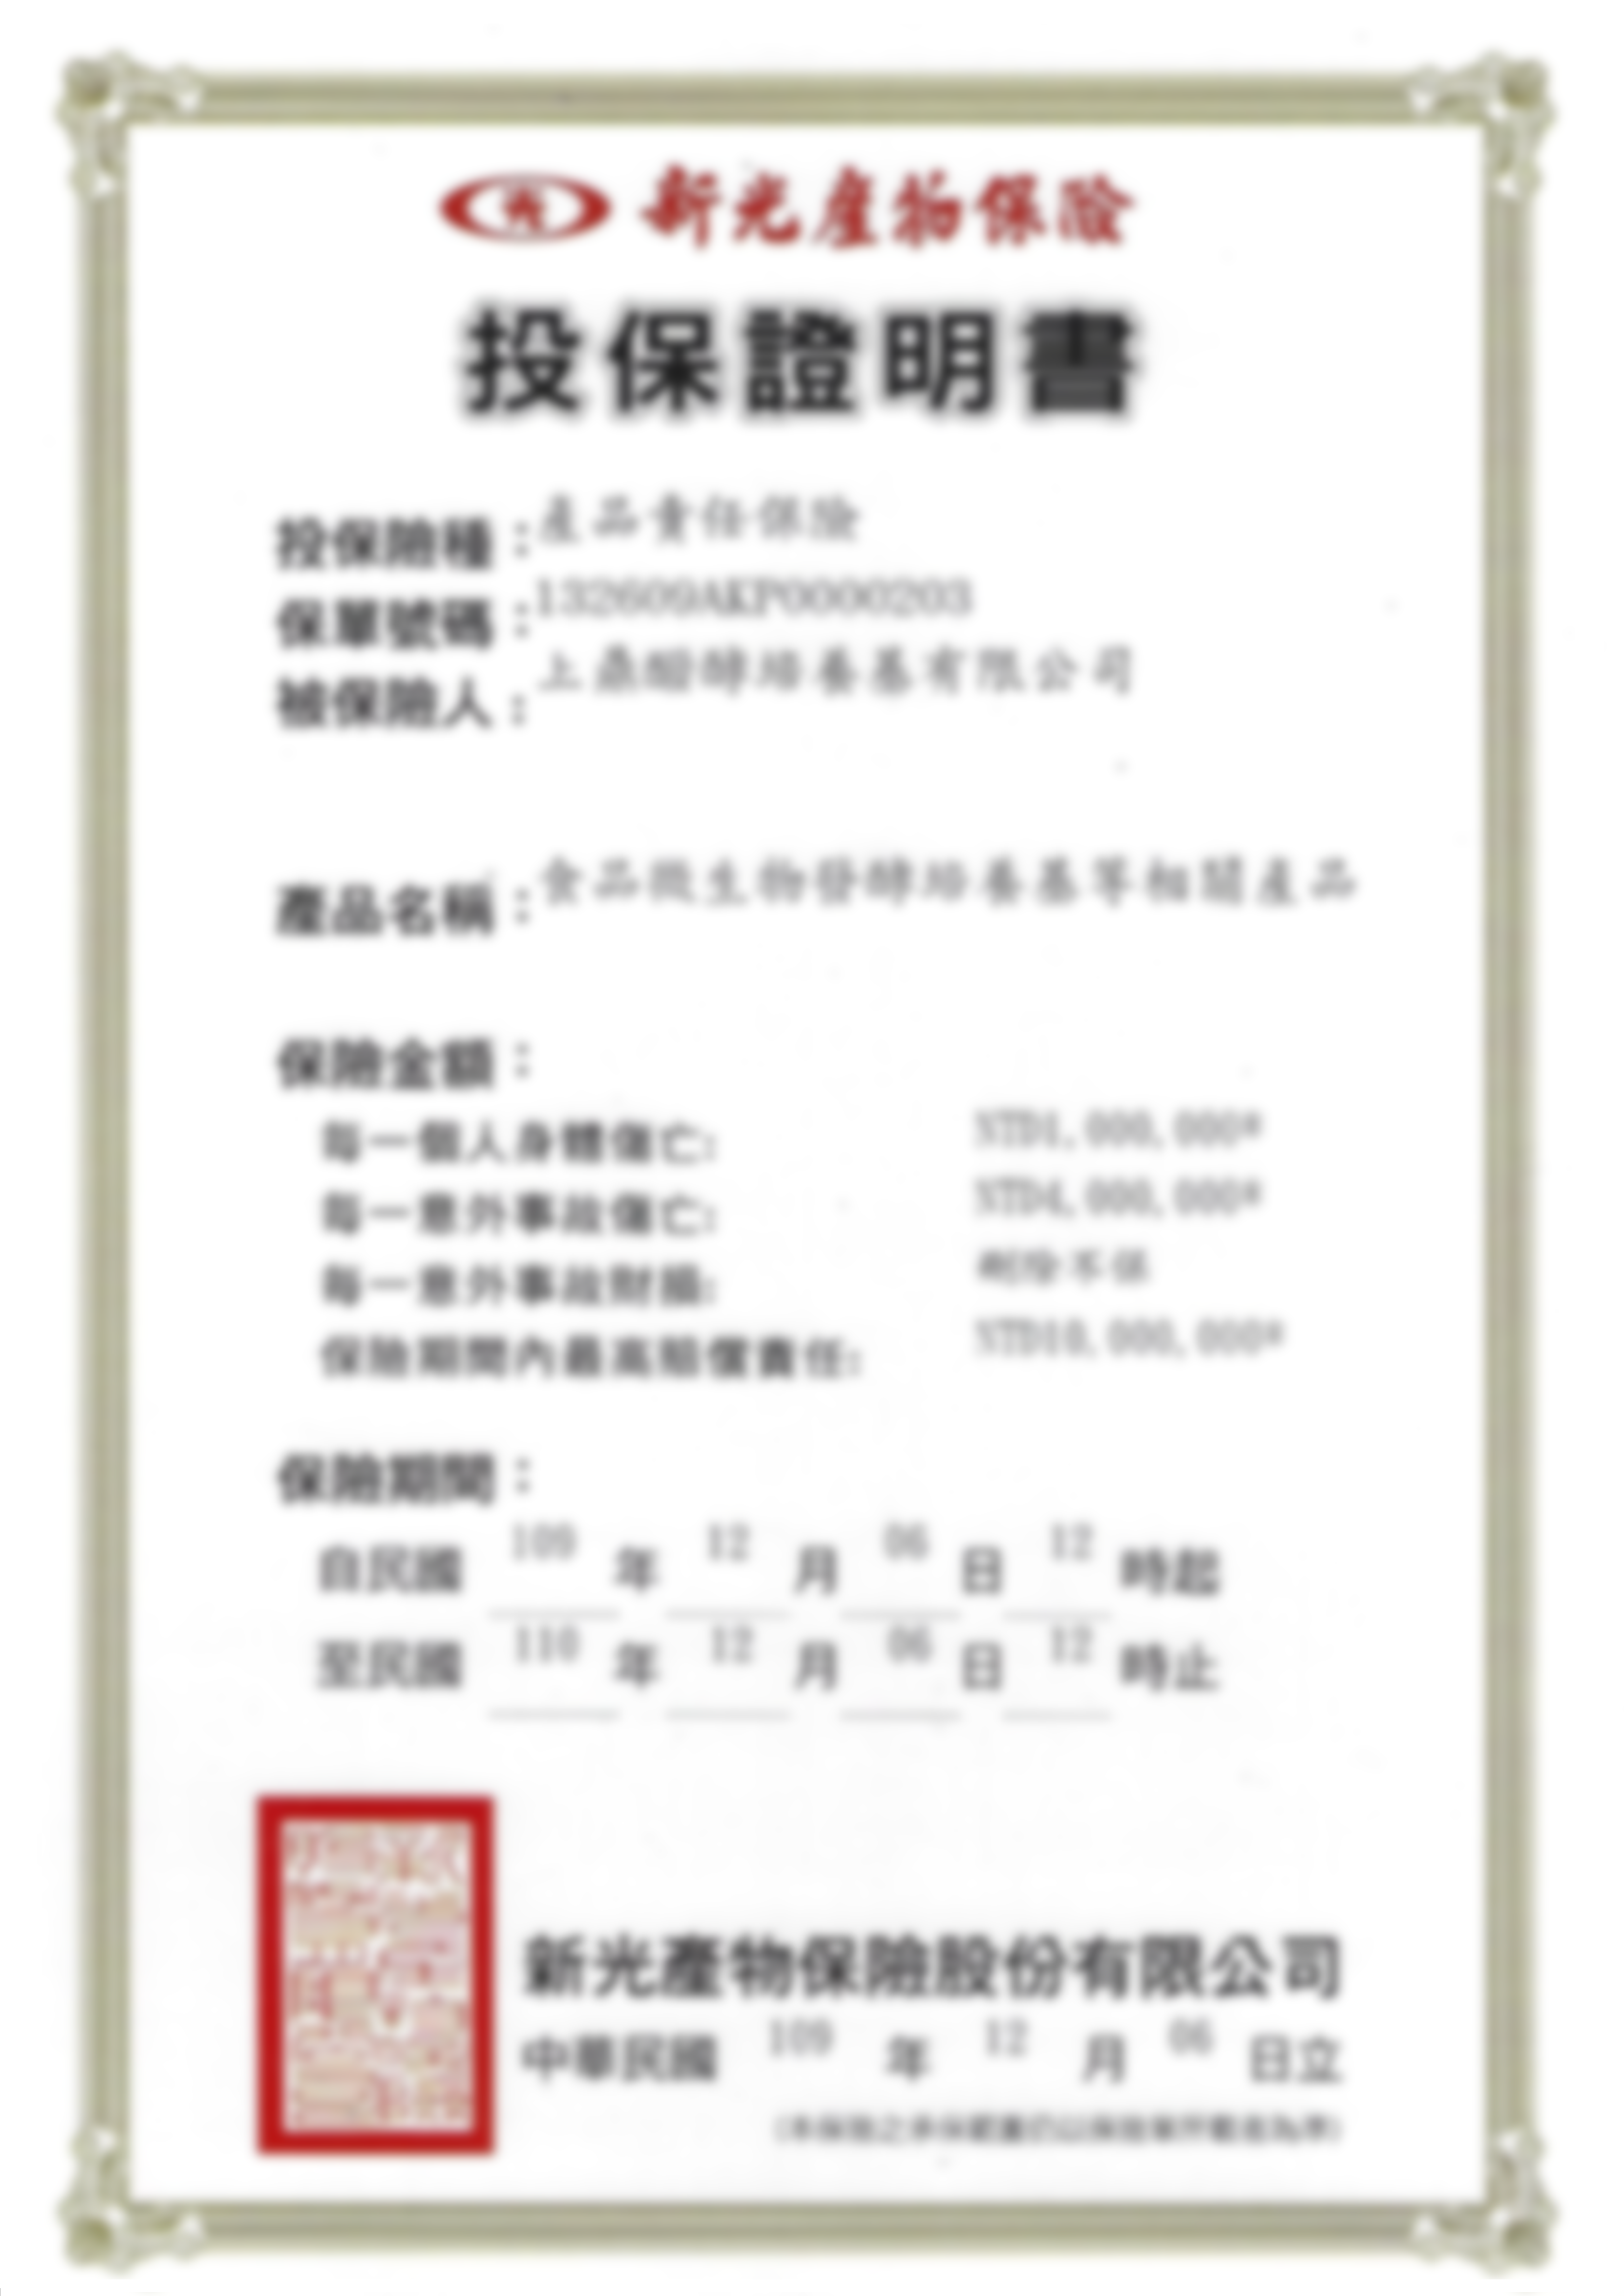 上鼎醱酵 新光產物保險投保證明到期日110.12.06高斯模糊版PNG 86078